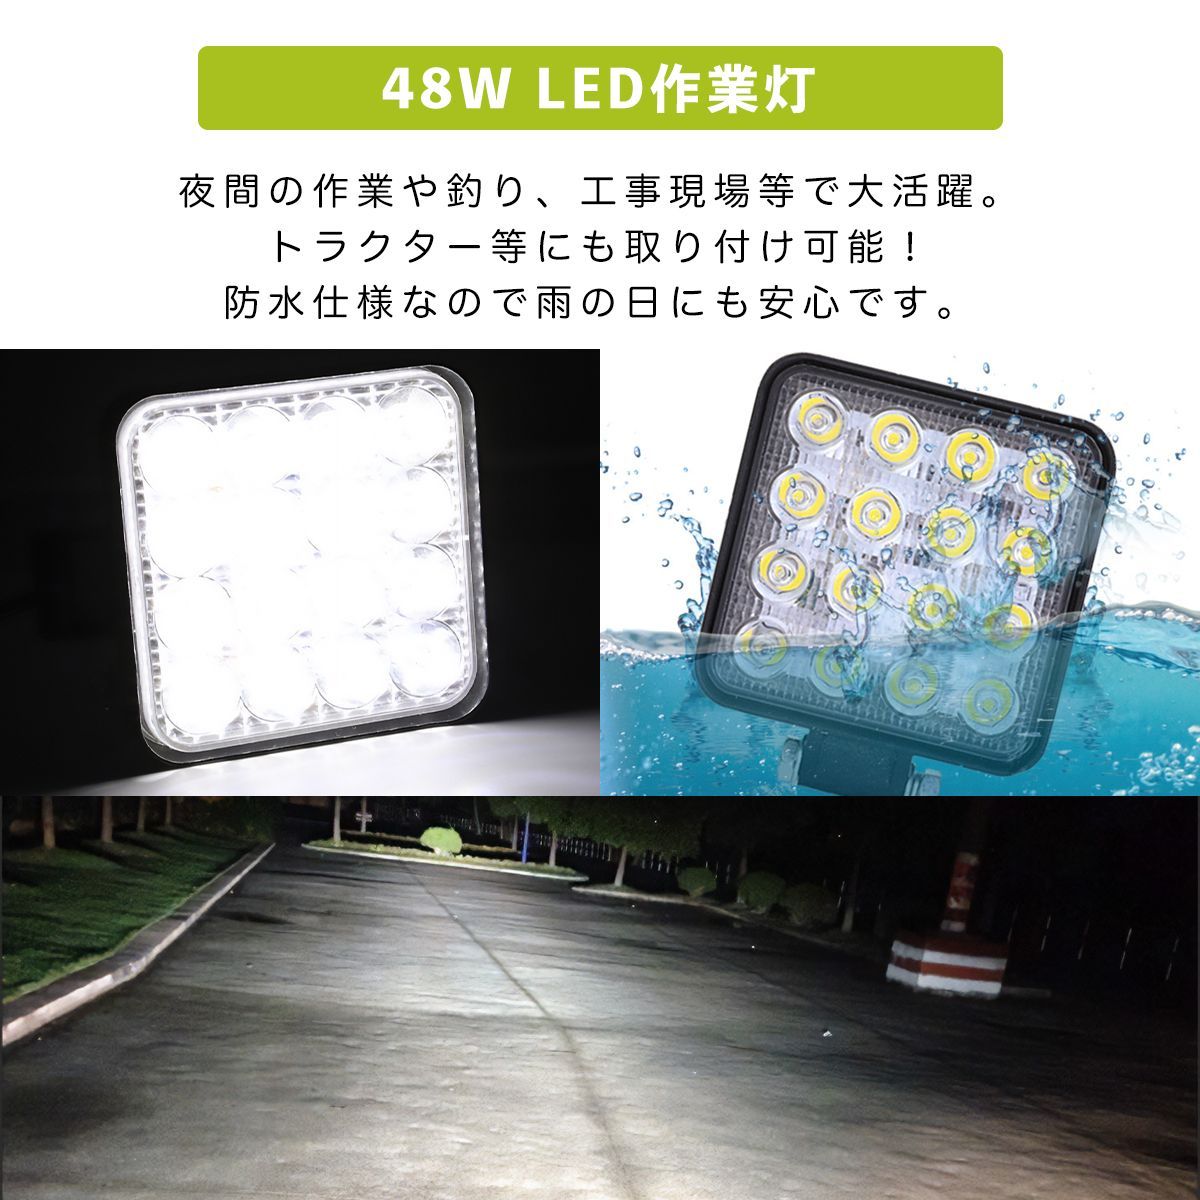 激安超特価LED ワークライト 作業灯 防水 48W 投光器 トラック YM-0046 ライト